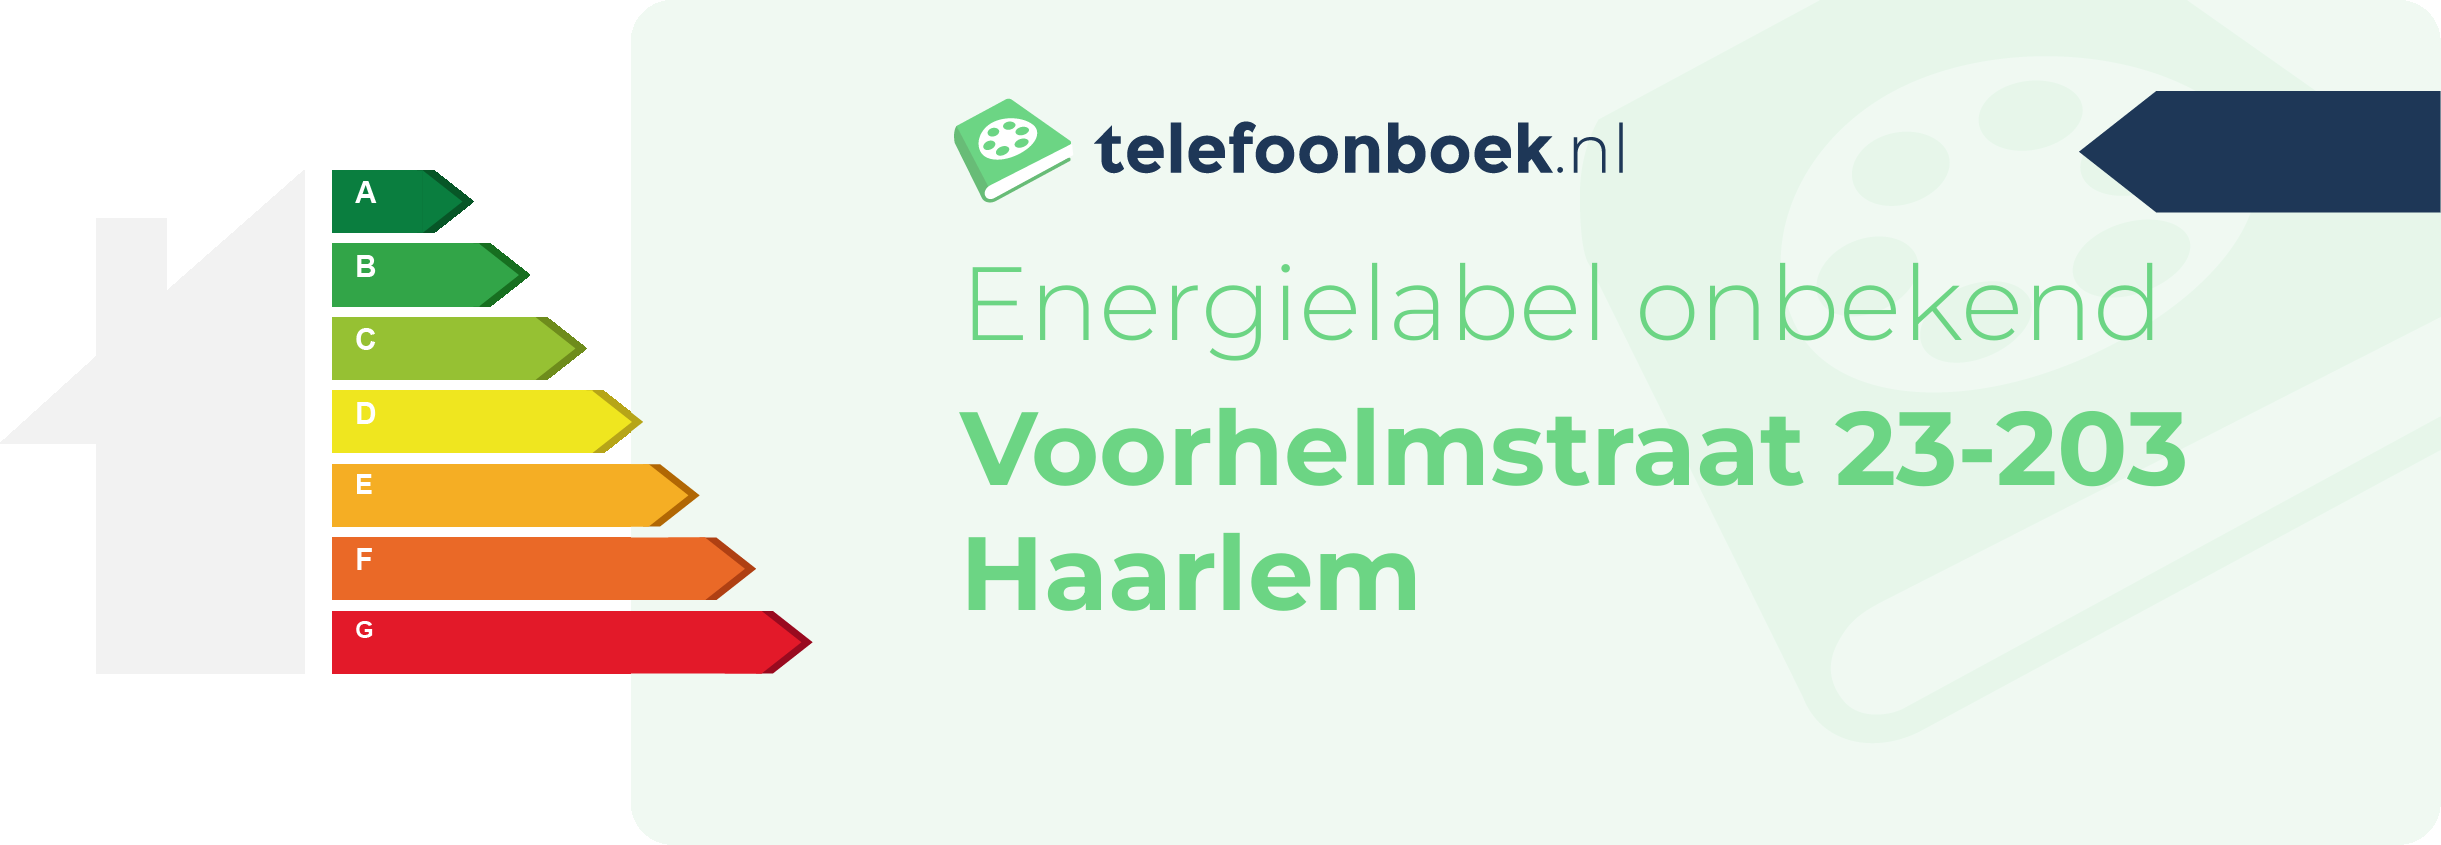 Energielabel Voorhelmstraat 23-203 Haarlem